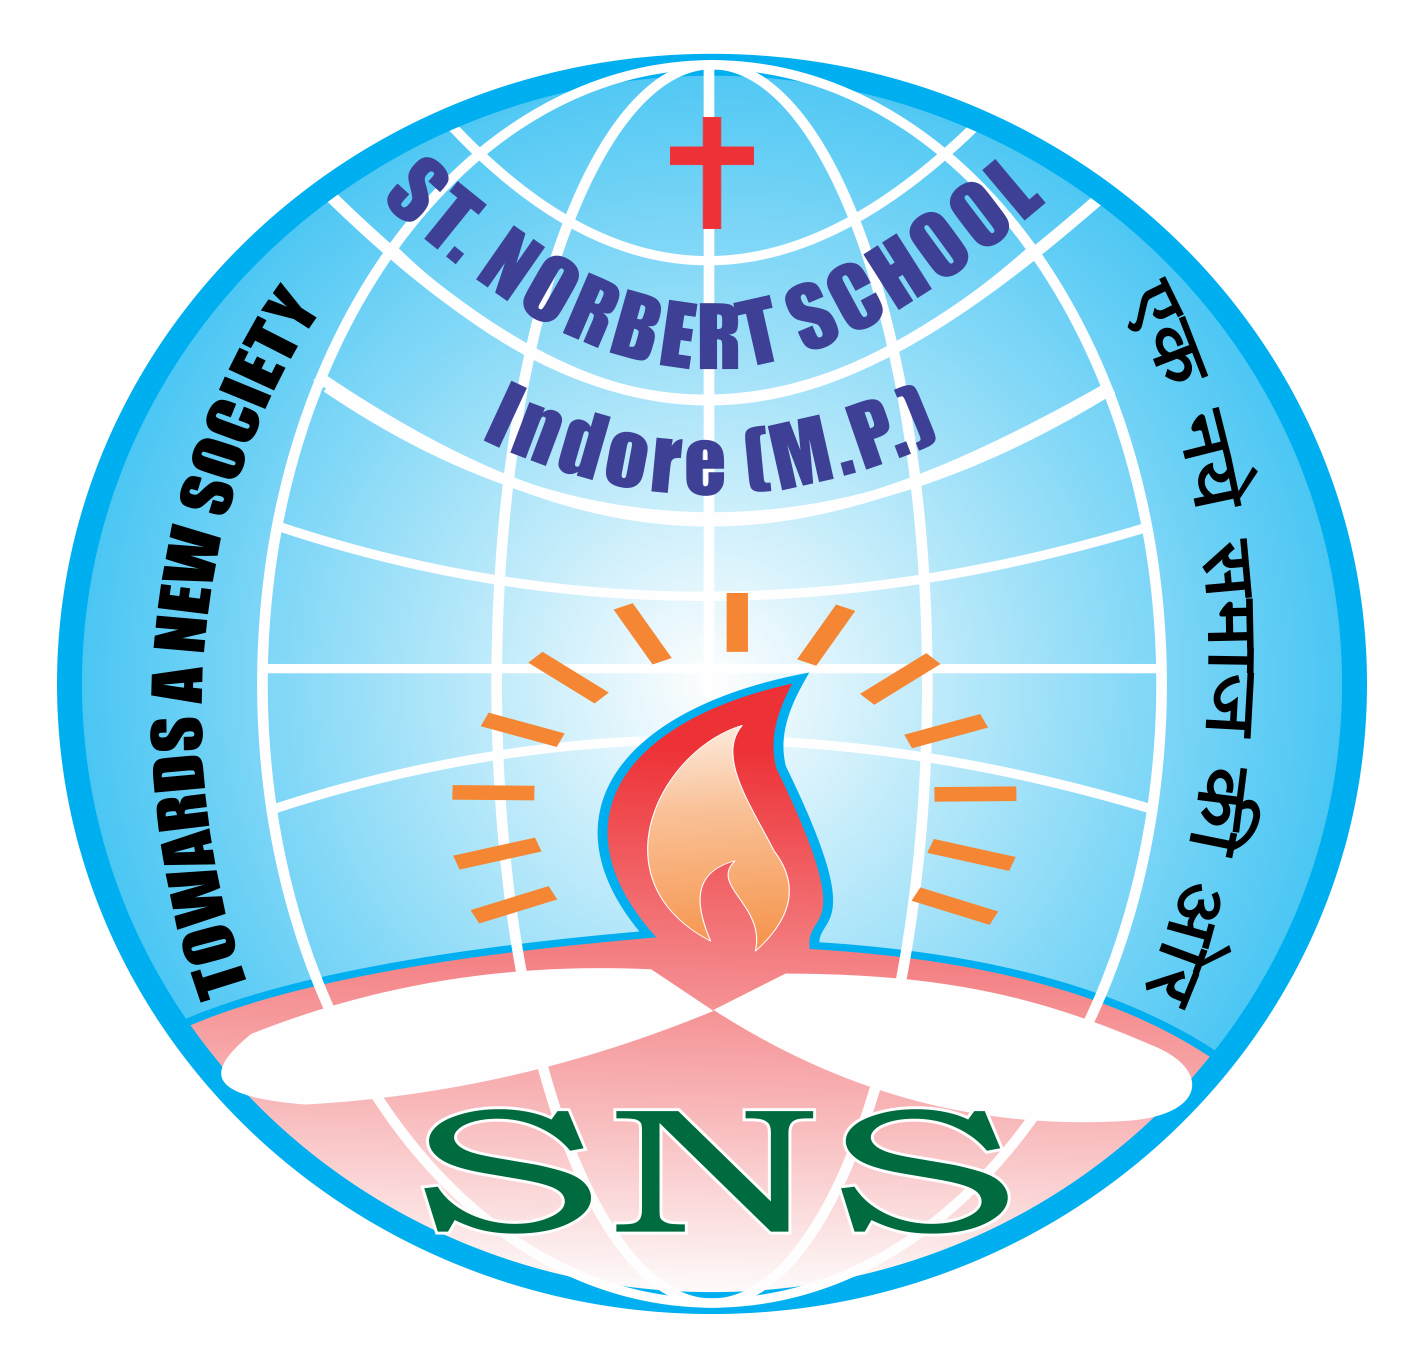 St. Norbert School Indore